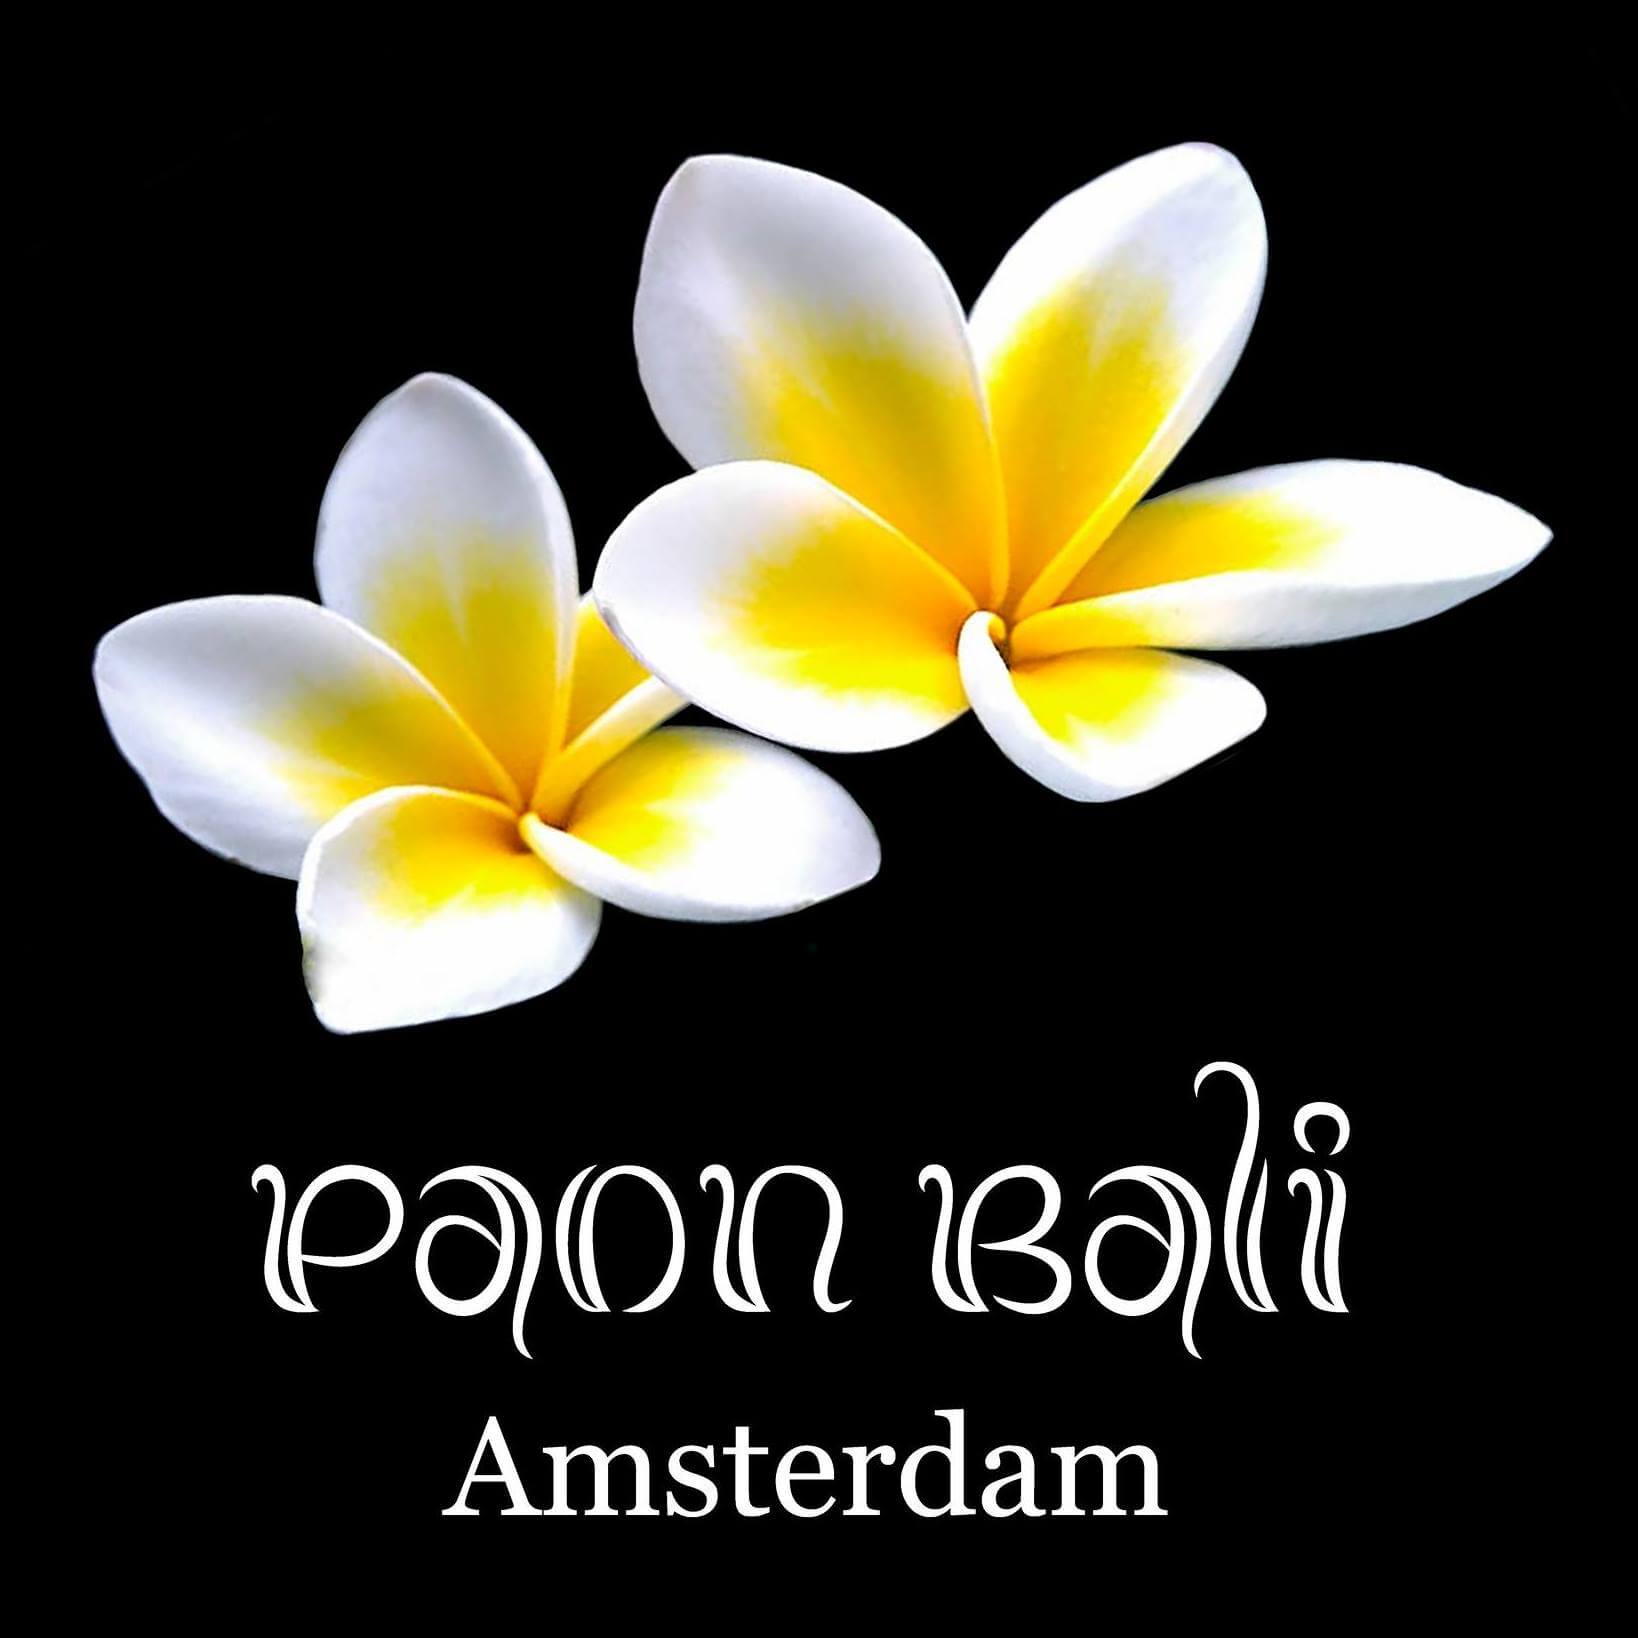 Paon Bali Amsterdam